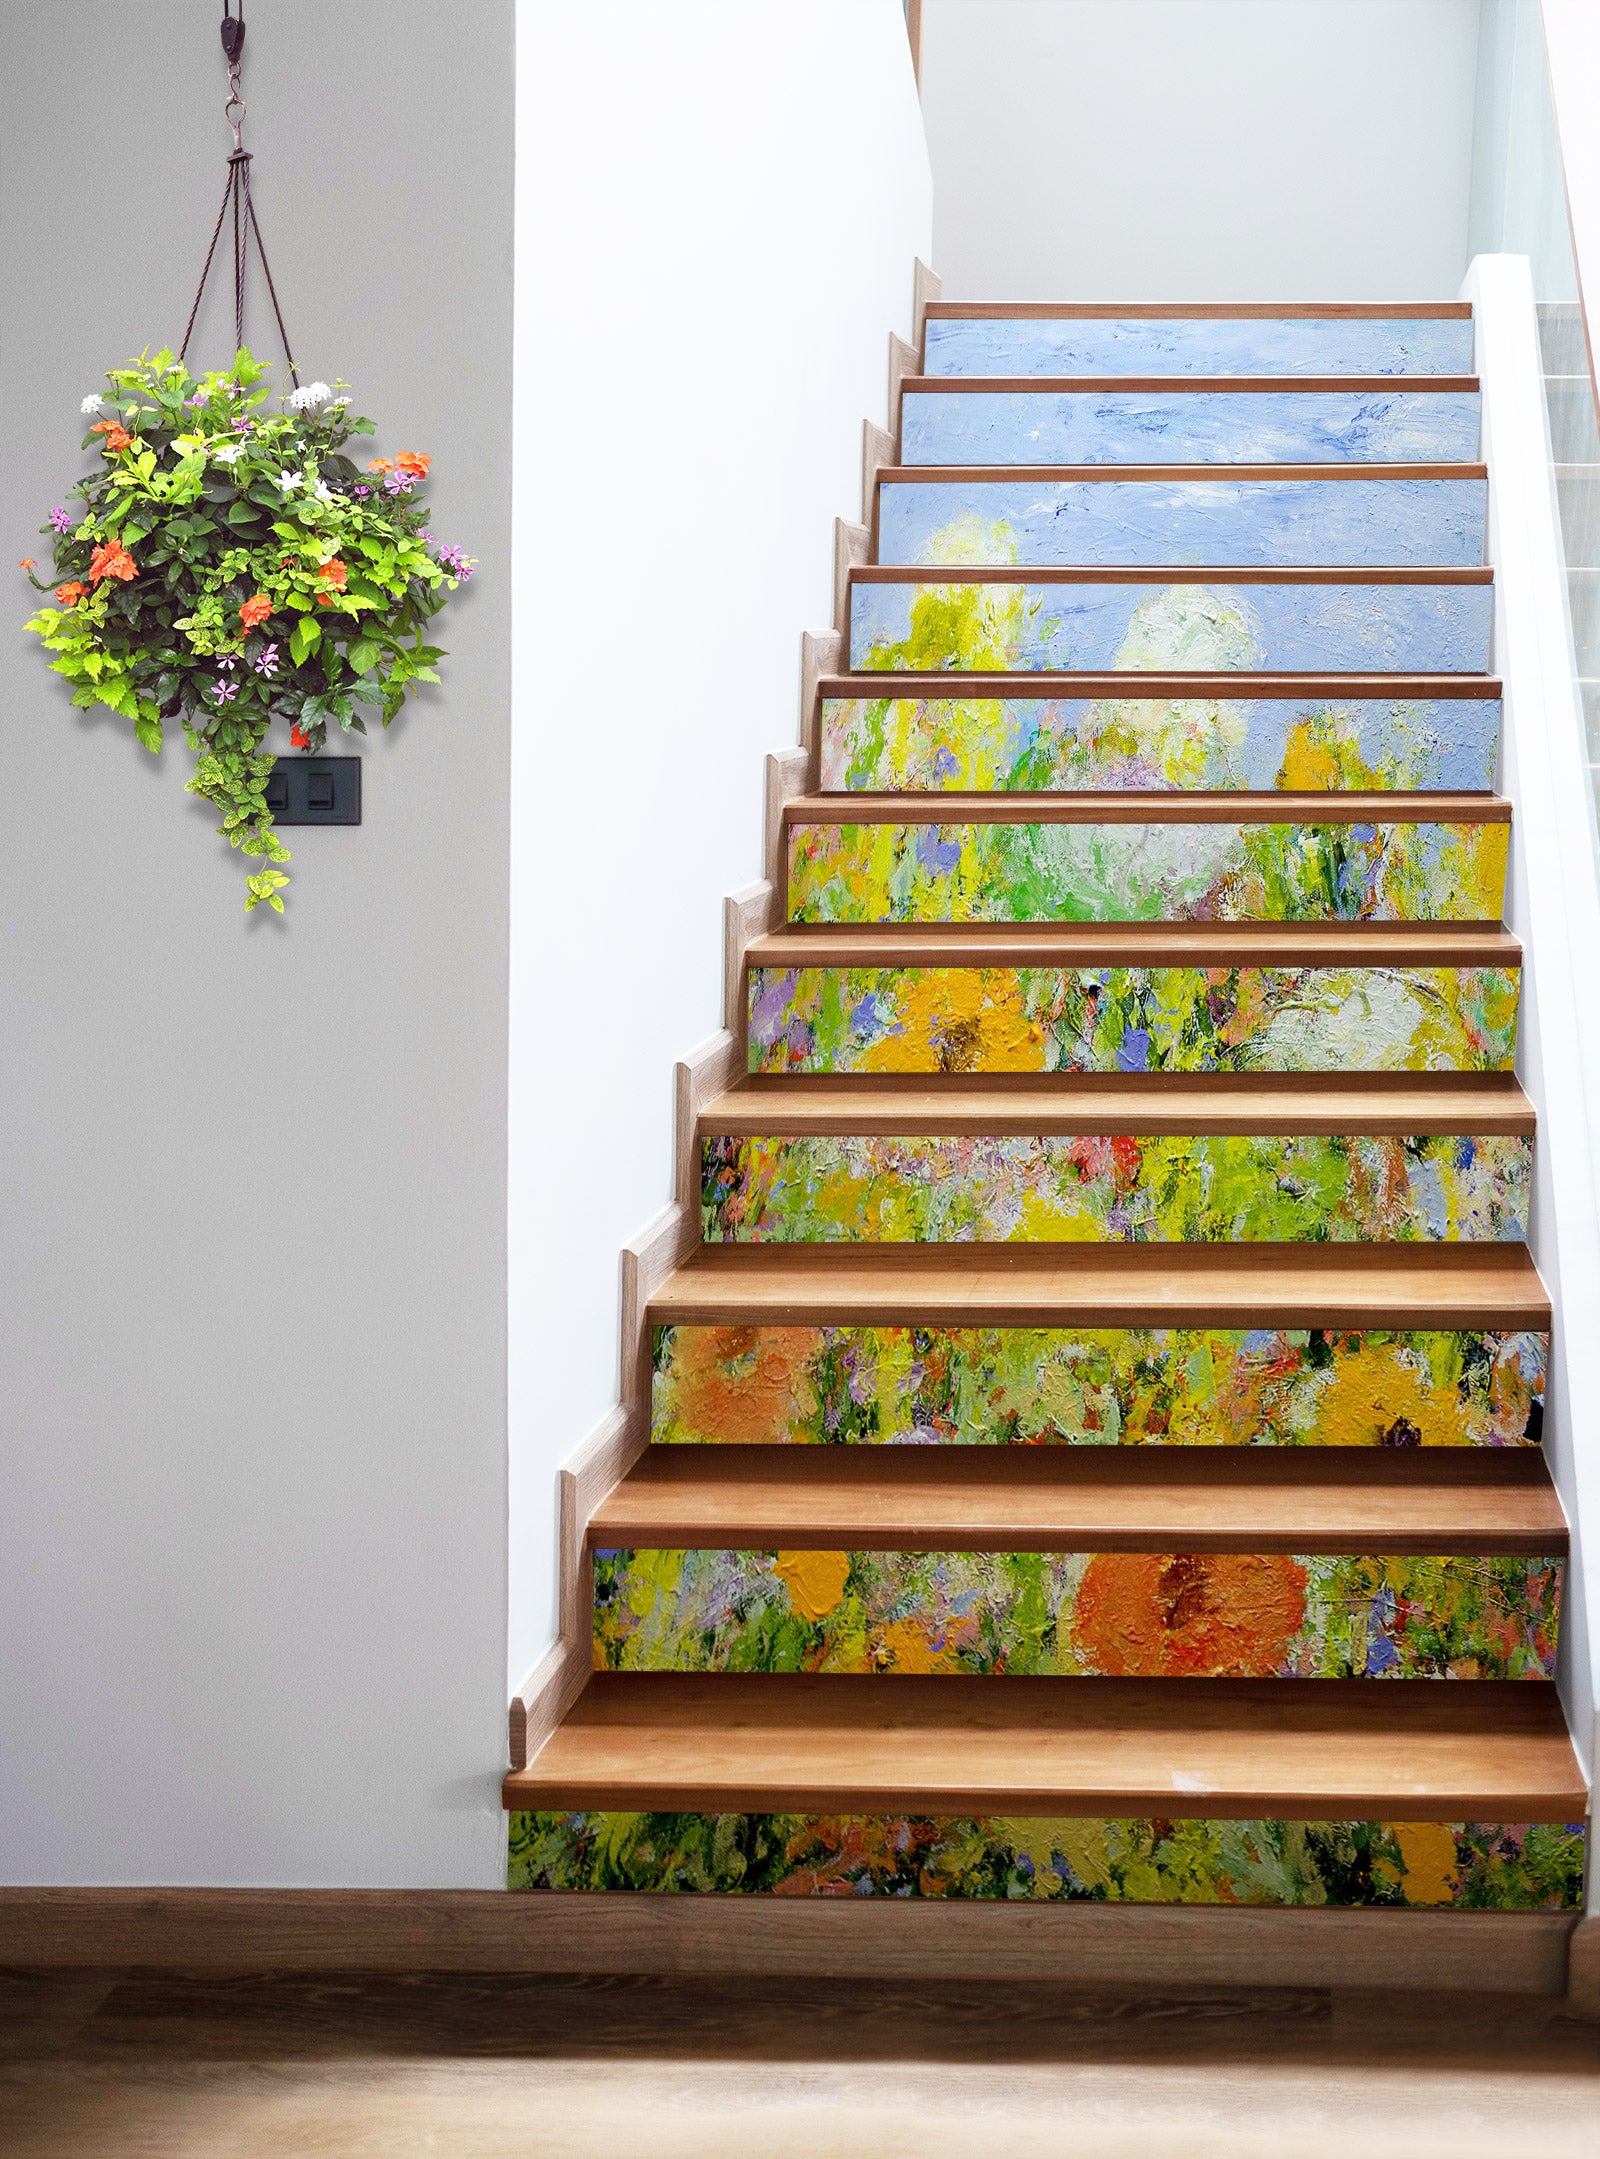 3D Yellow Garden Painting 90115 Allan P. Friedlander Stair Risers